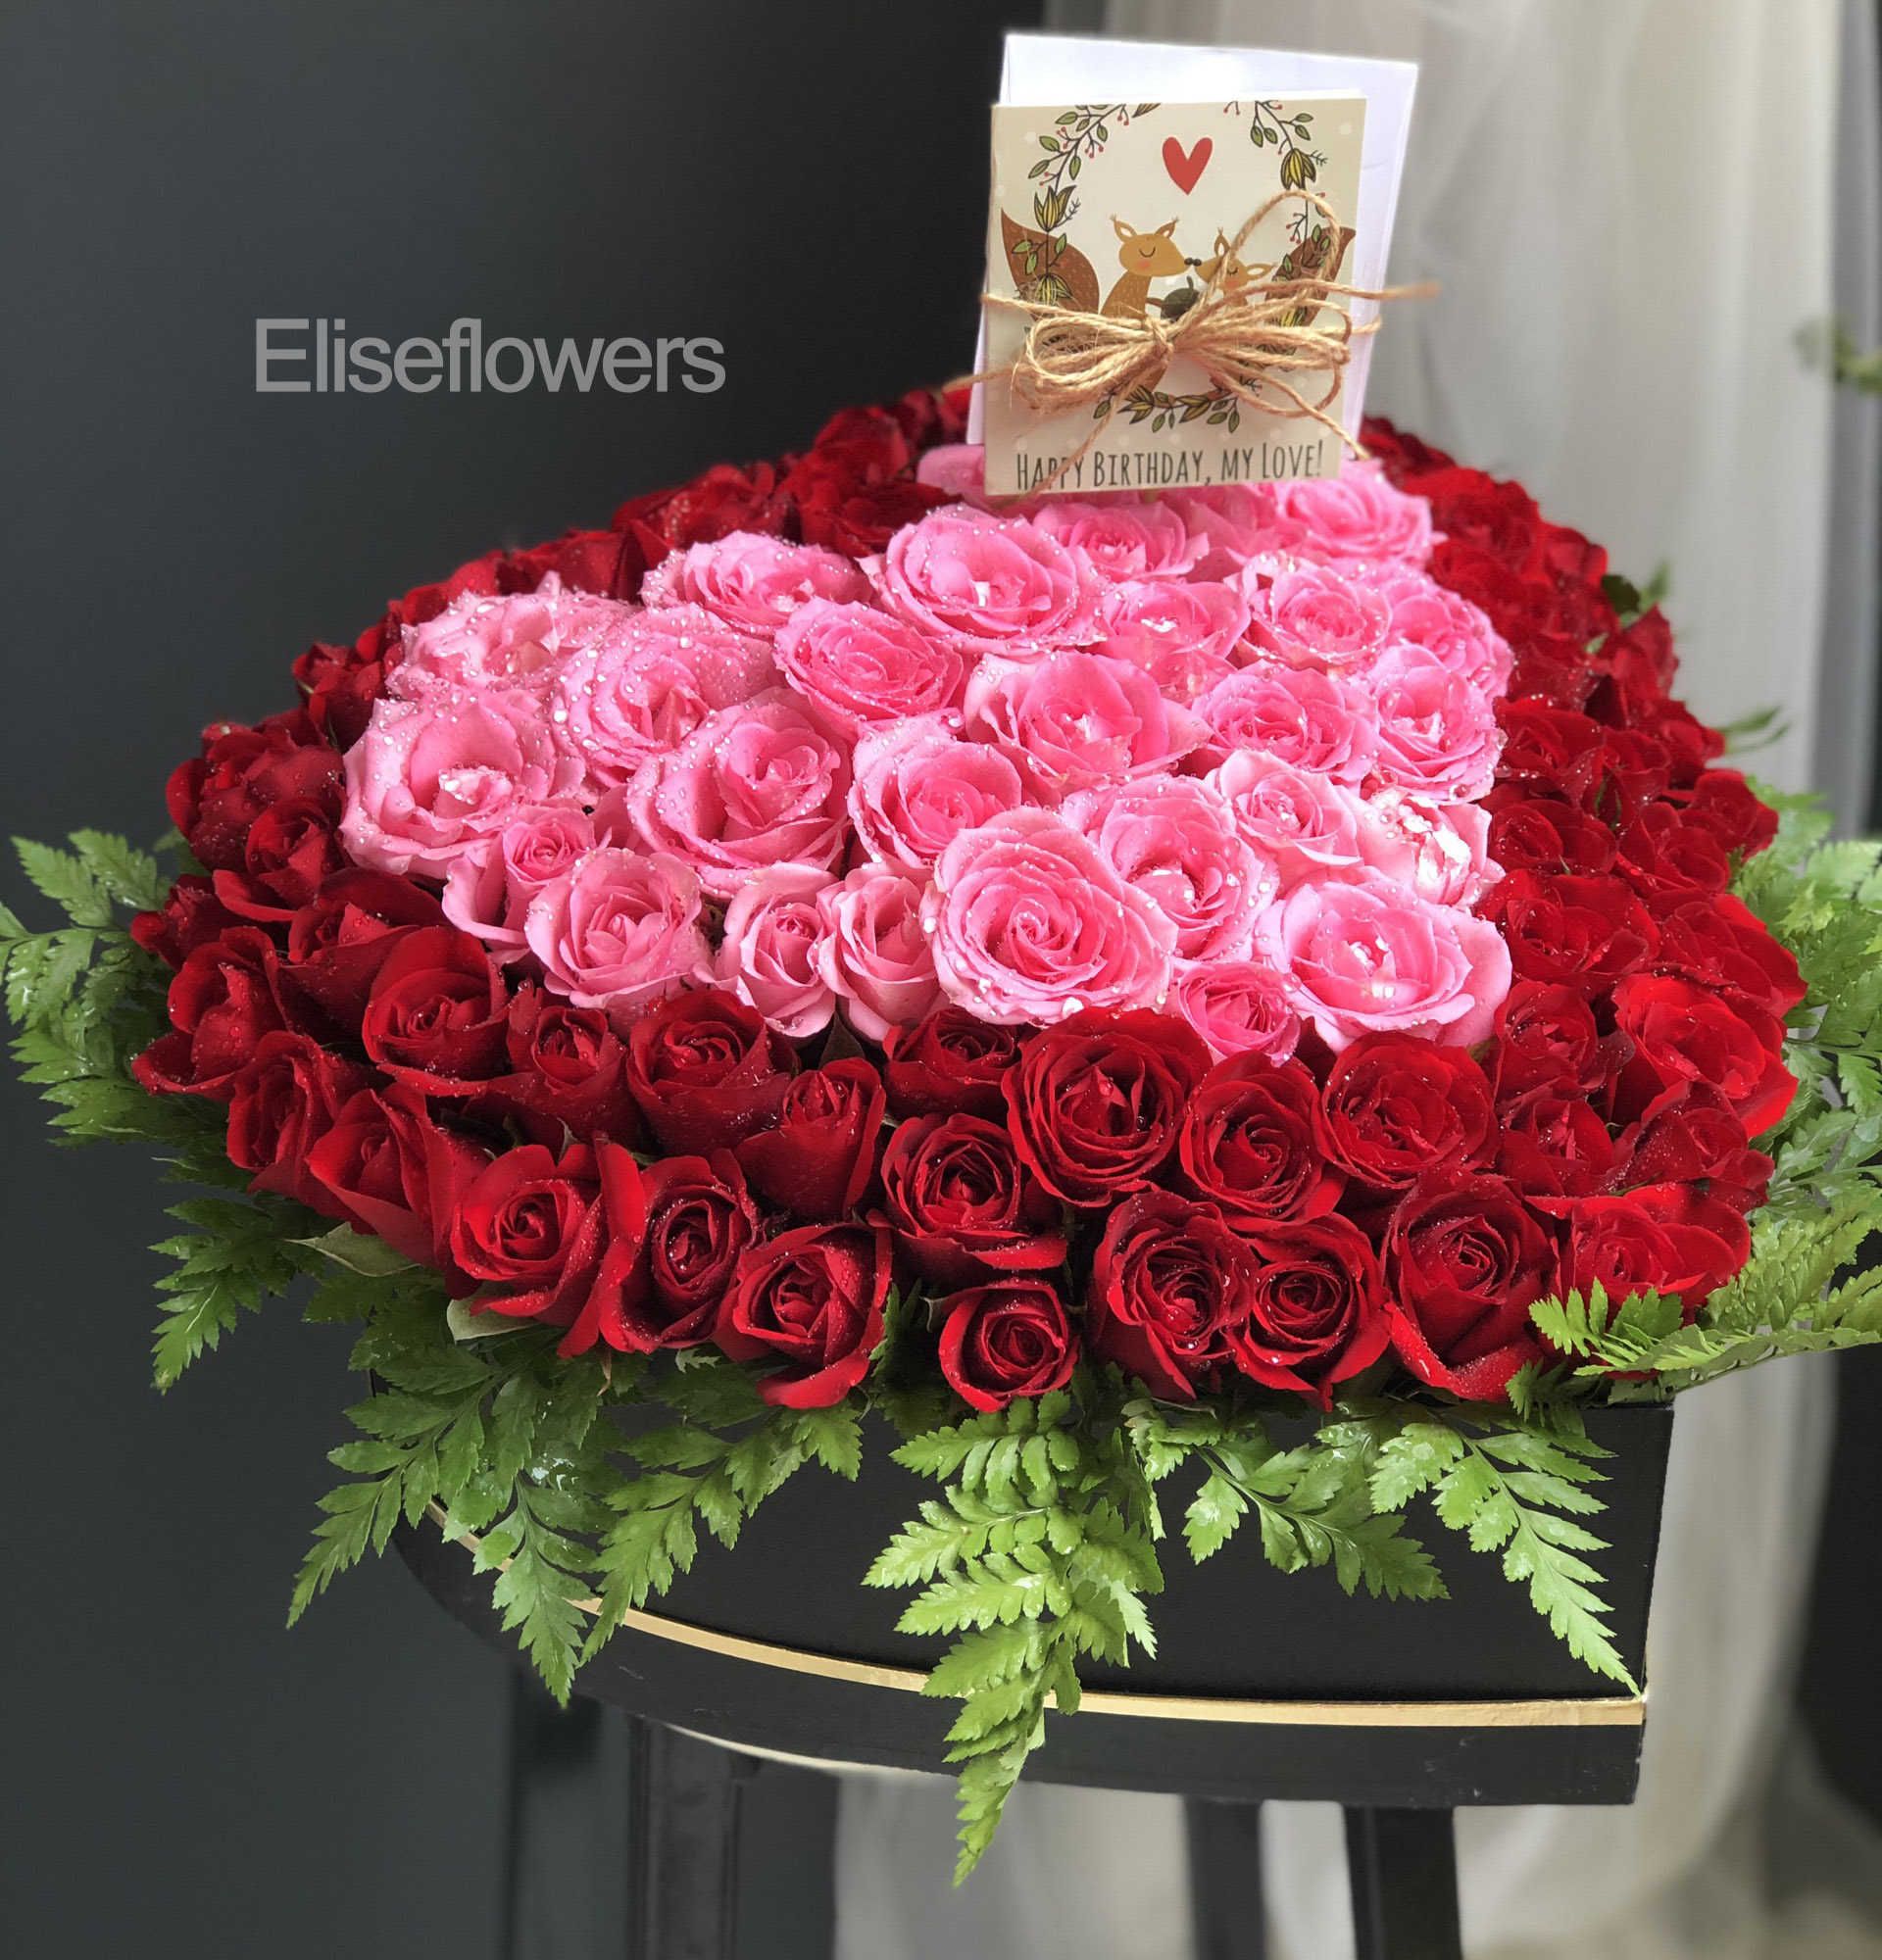 Hộp hoa hình trái tim: Với hộp hoa hình trái tim này, bạn sẽ mang đến một món quà tuyệt vời cho người mà bạn yêu thương. Với hình dáng trái tim đầy lãng mạn và những bông hoa hồng tuyệt đẹp được sắp xếp một cách tinh tế, hộp hoa này chắc chắn sẽ làm người nhận cảm thấy đặc biệt và quan tâm.